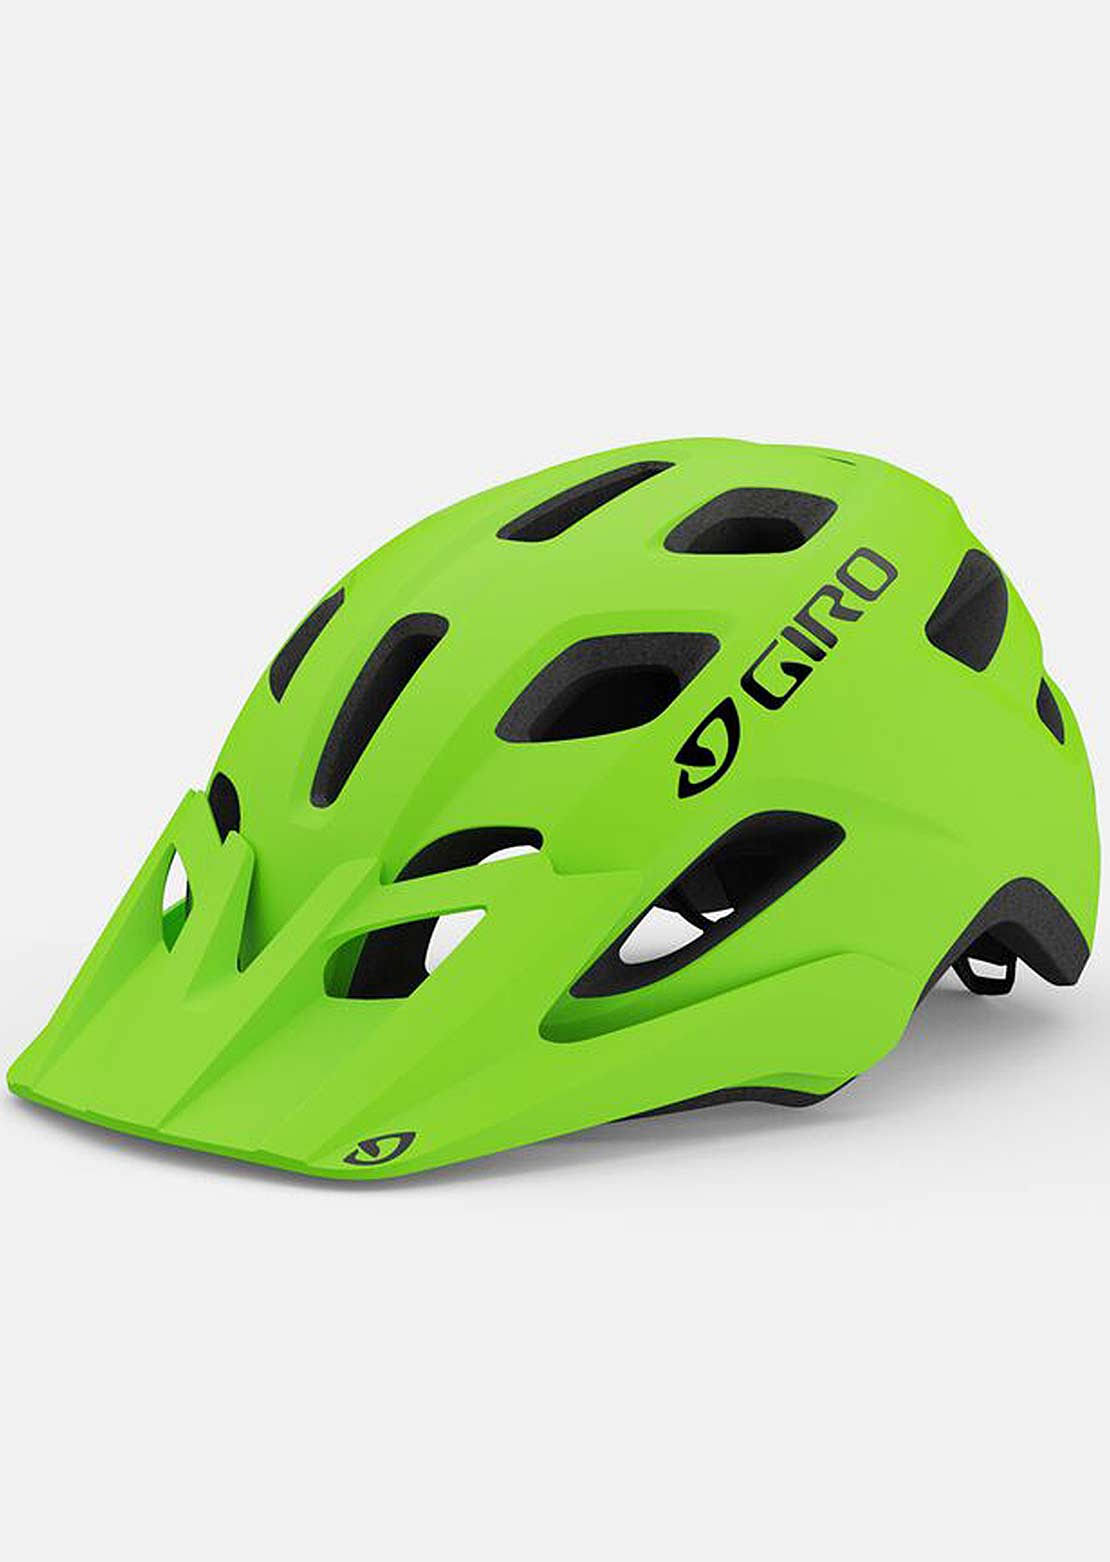 Giro Men's Fixture MIPS Mountain Bike Helmet